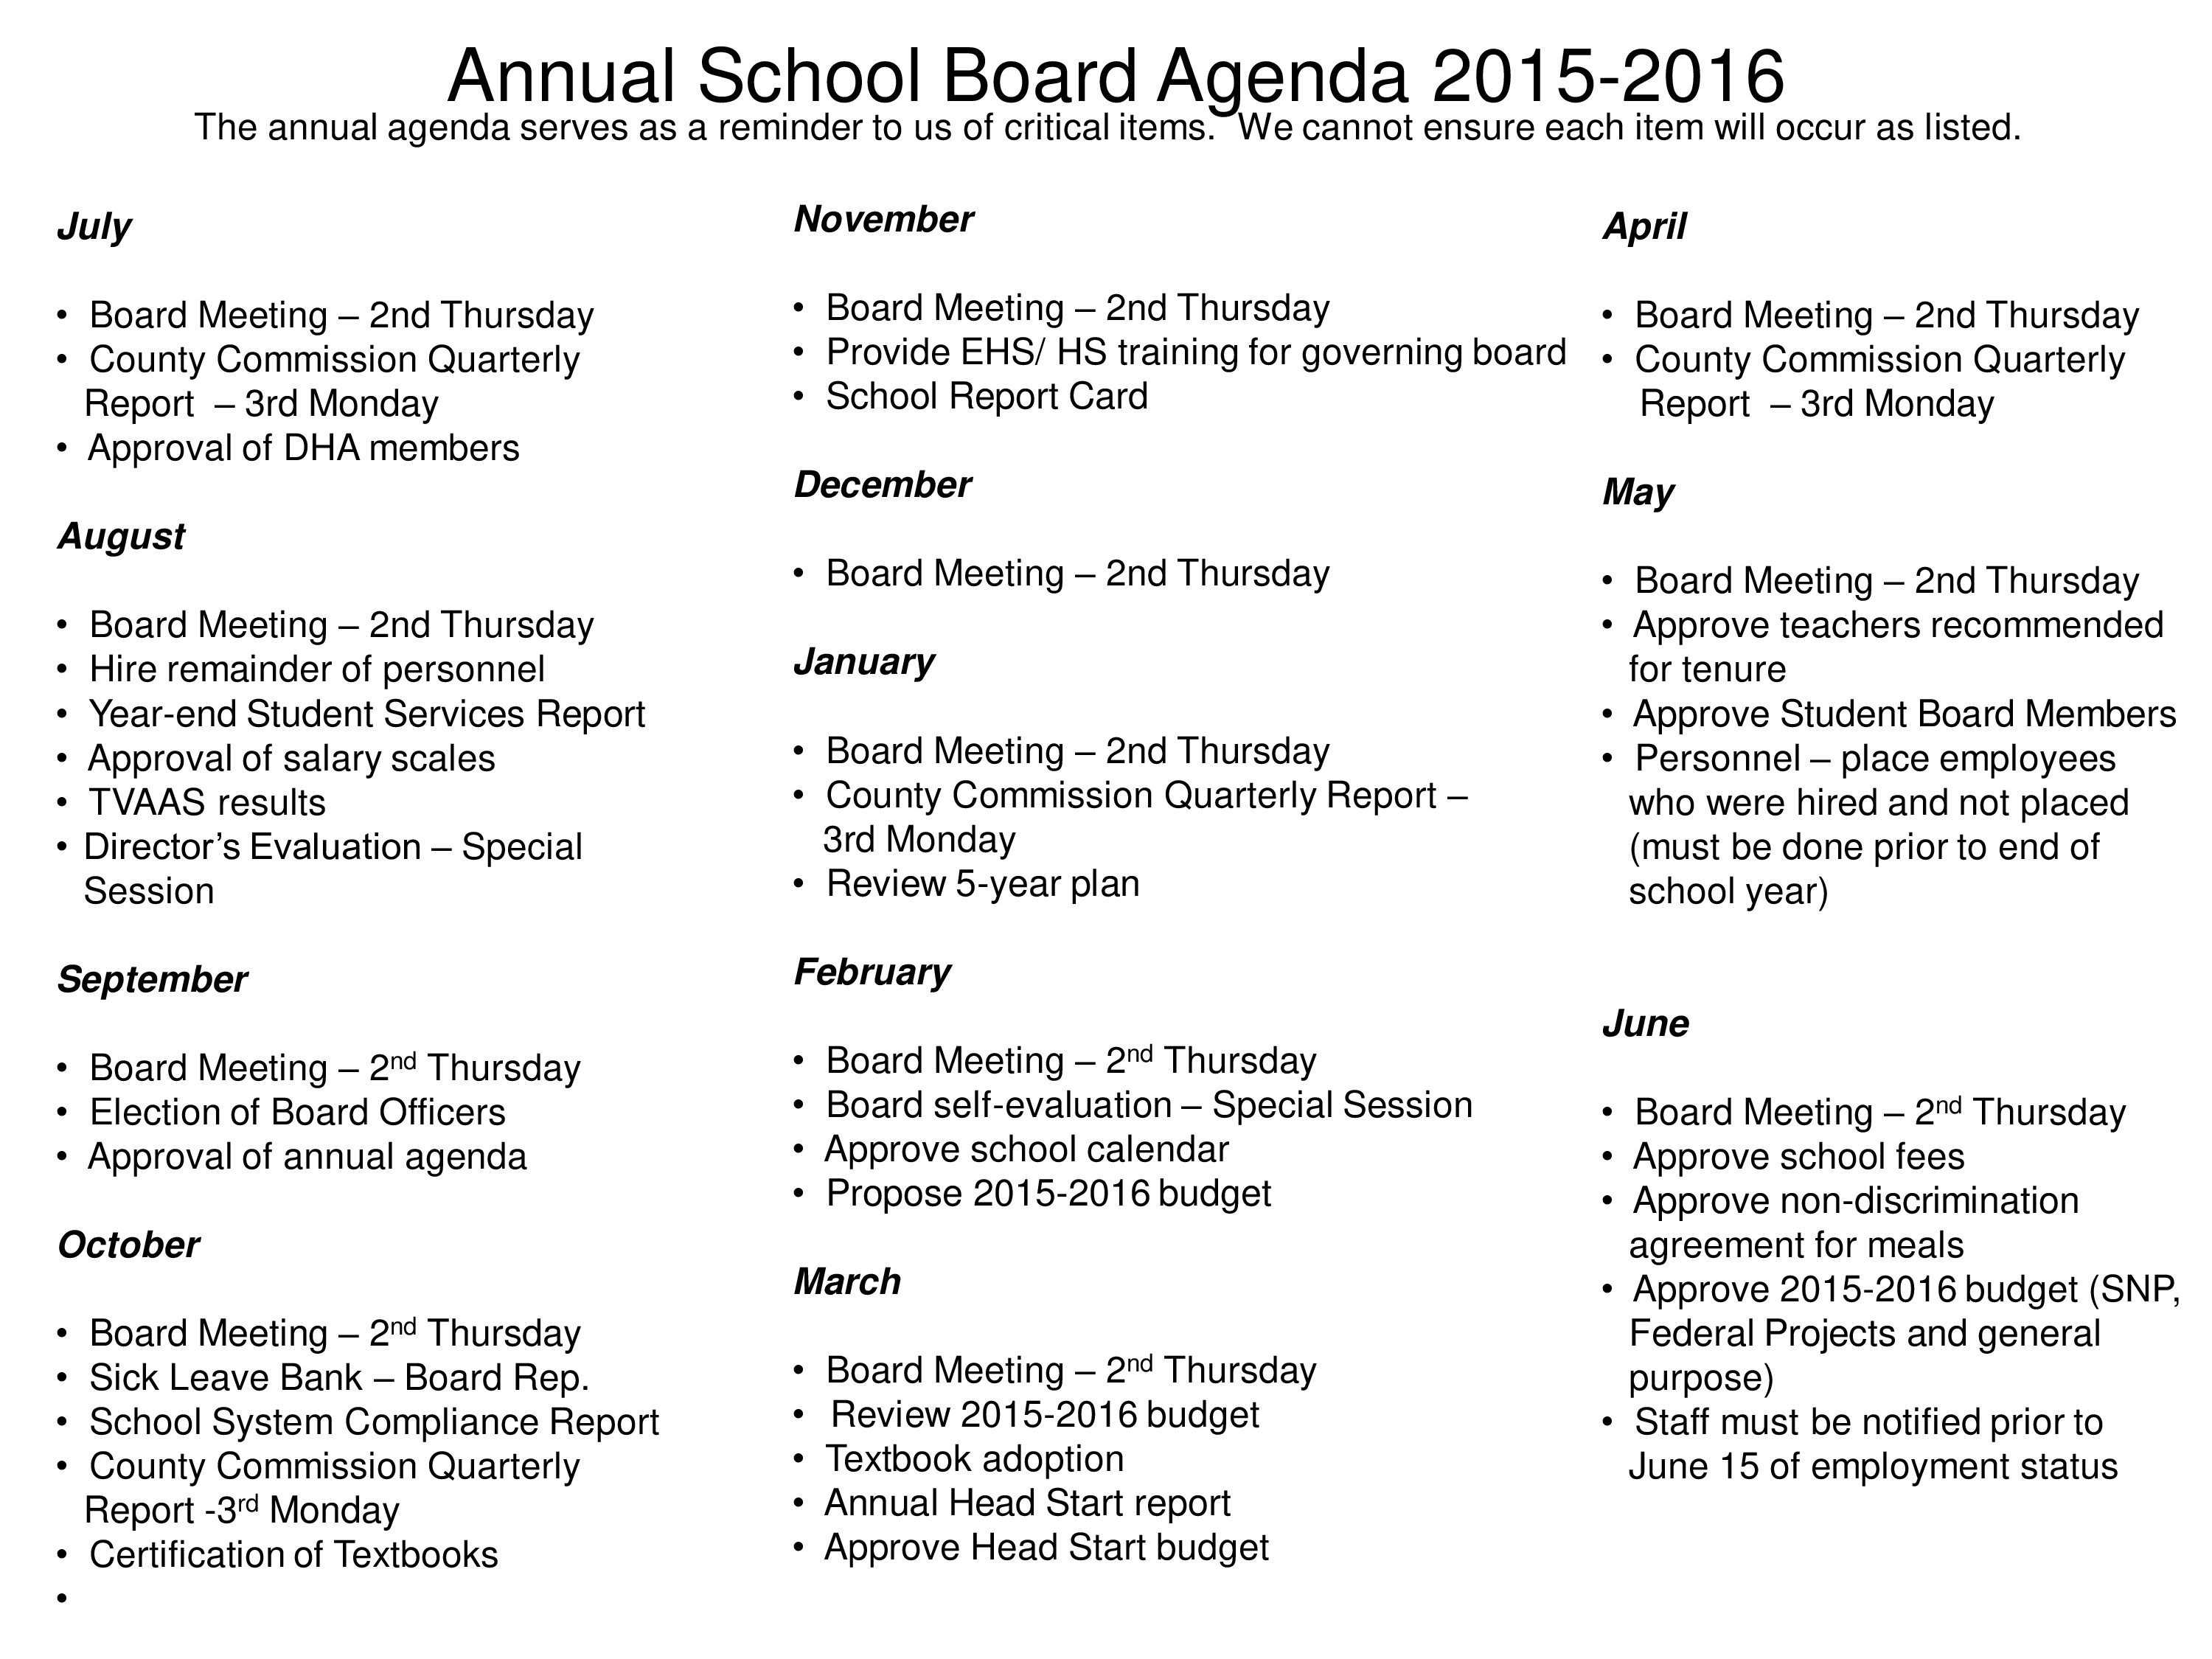 Annual School Board Agenda main image